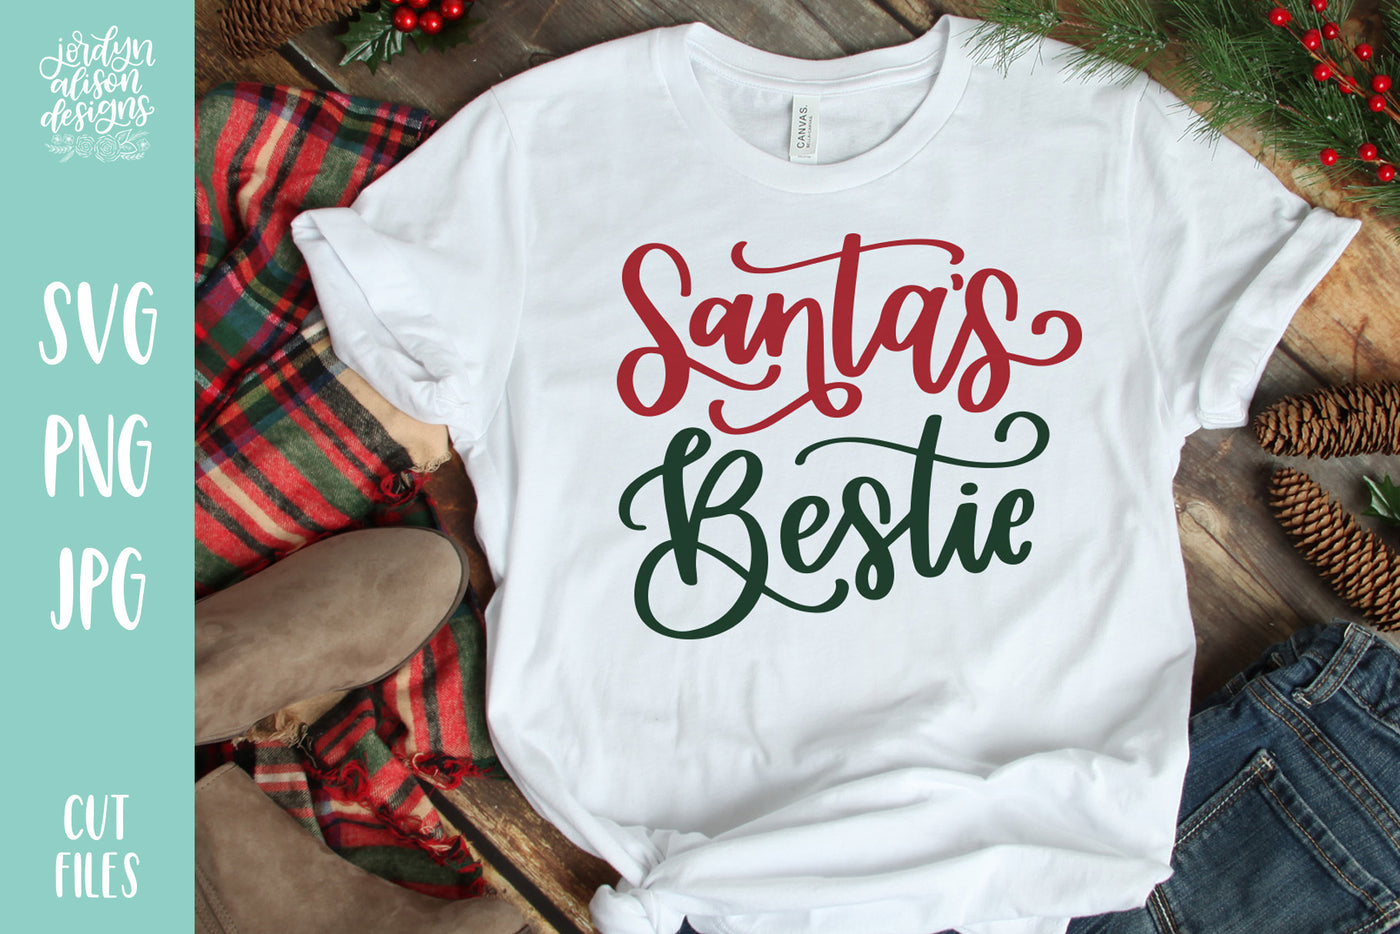 White T-shirt with handwritten text "Santa's Bestie"